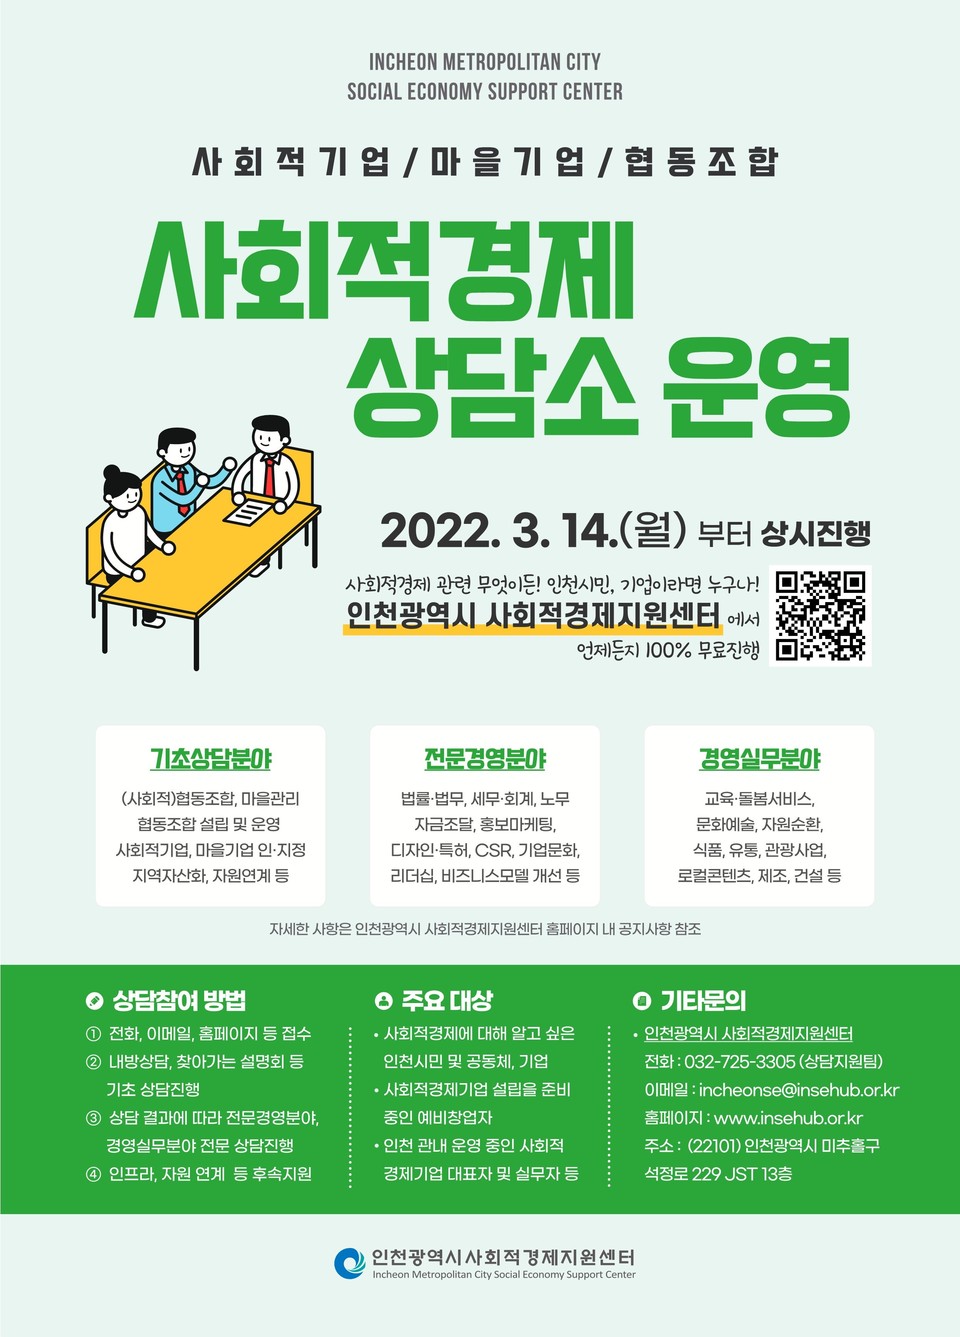 사회적경제 상담소 운영 안내 포스터./출처=인천시 사회적경제지원센터